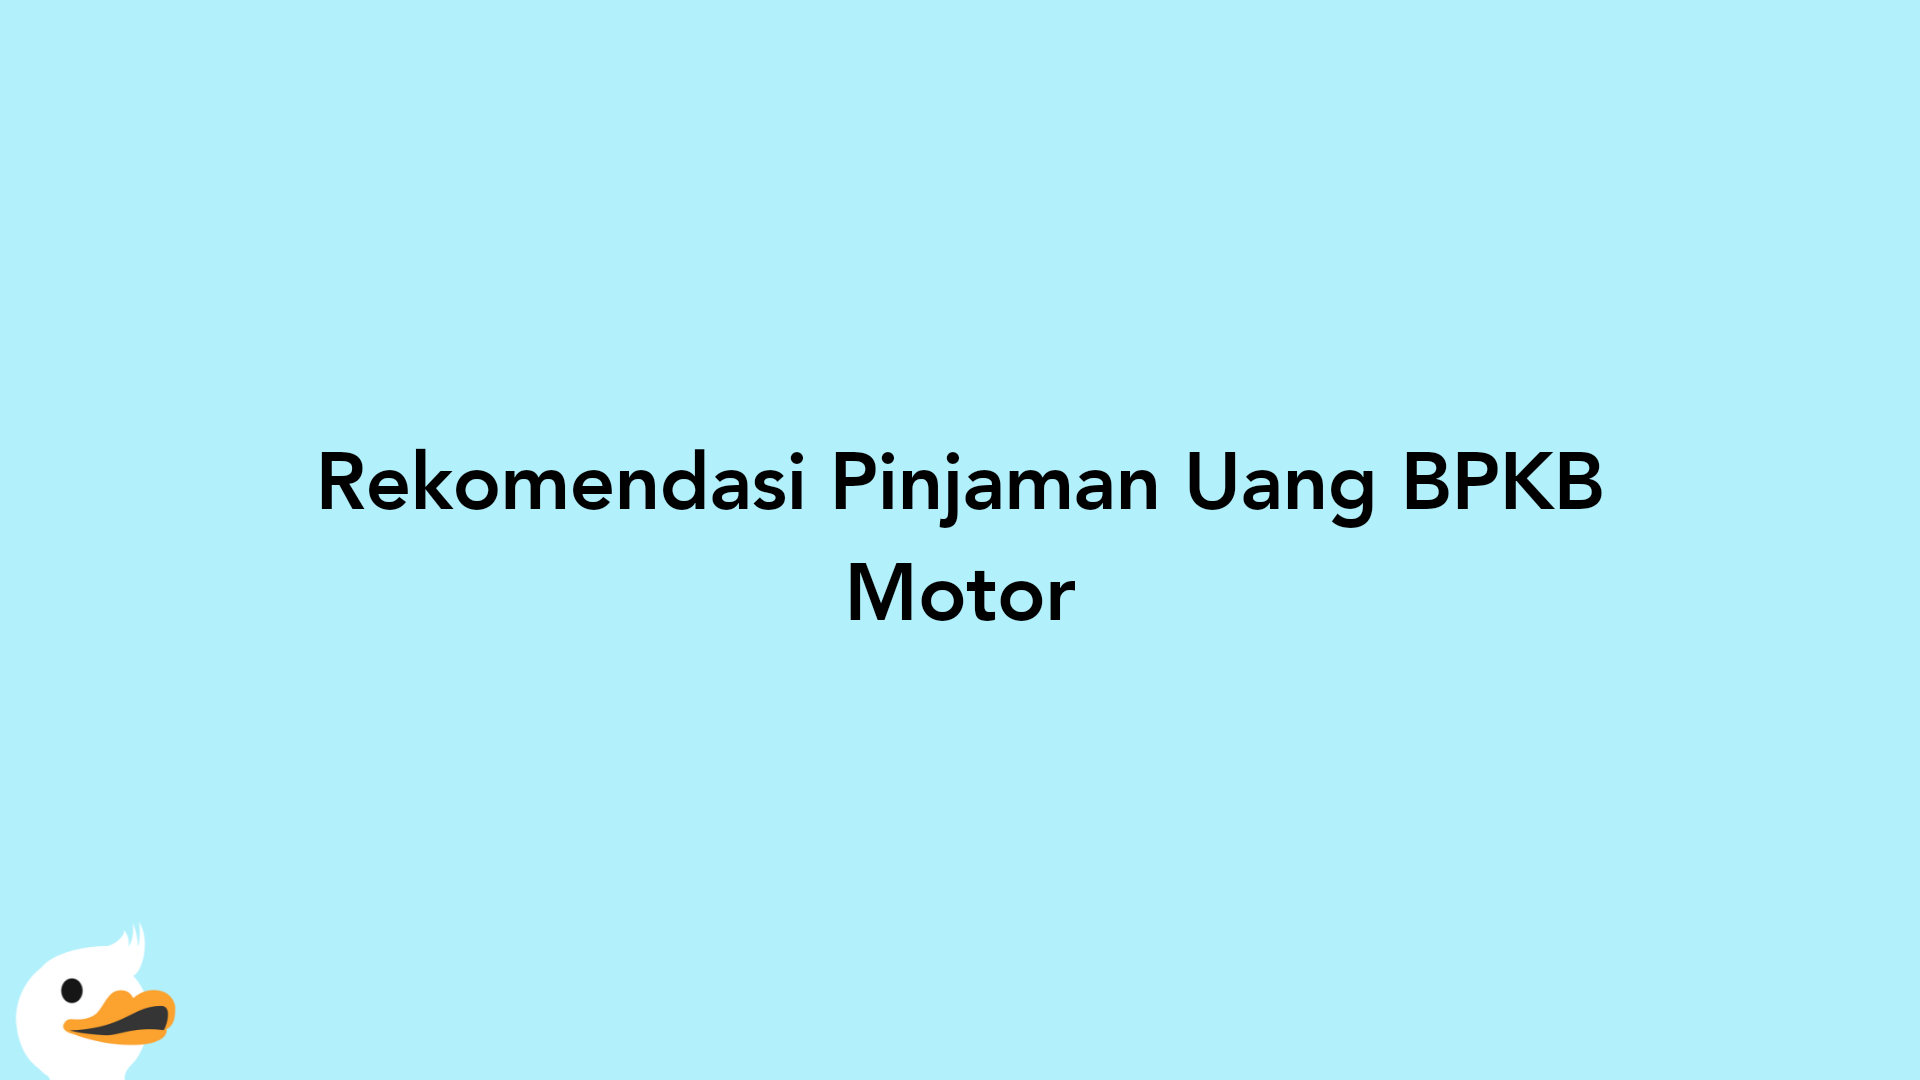 Rekomendasi Pinjaman Uang BPKB Motor